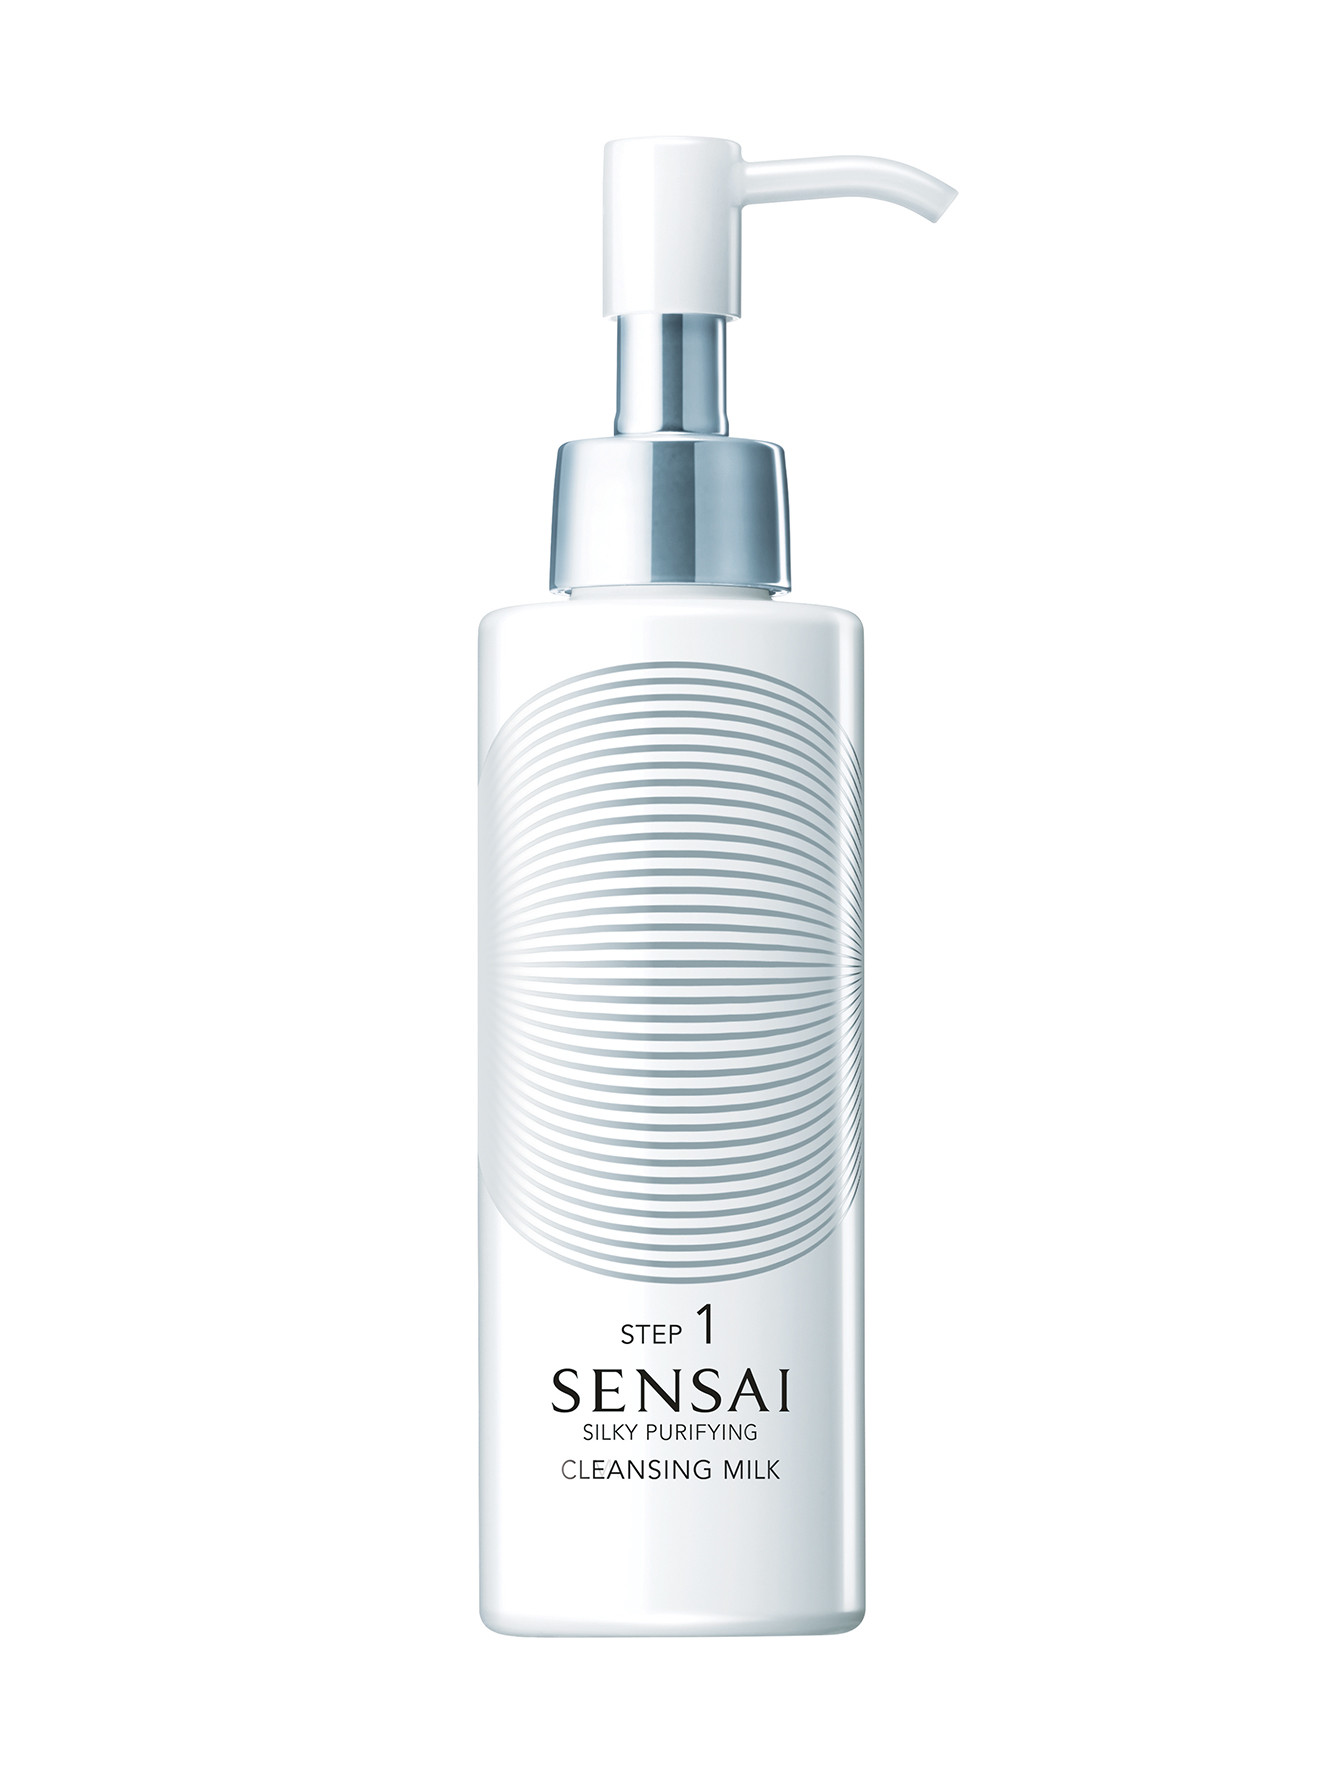 Очищающее молочко для лица - Sensai Silky Purifying,150ml - Общий вид